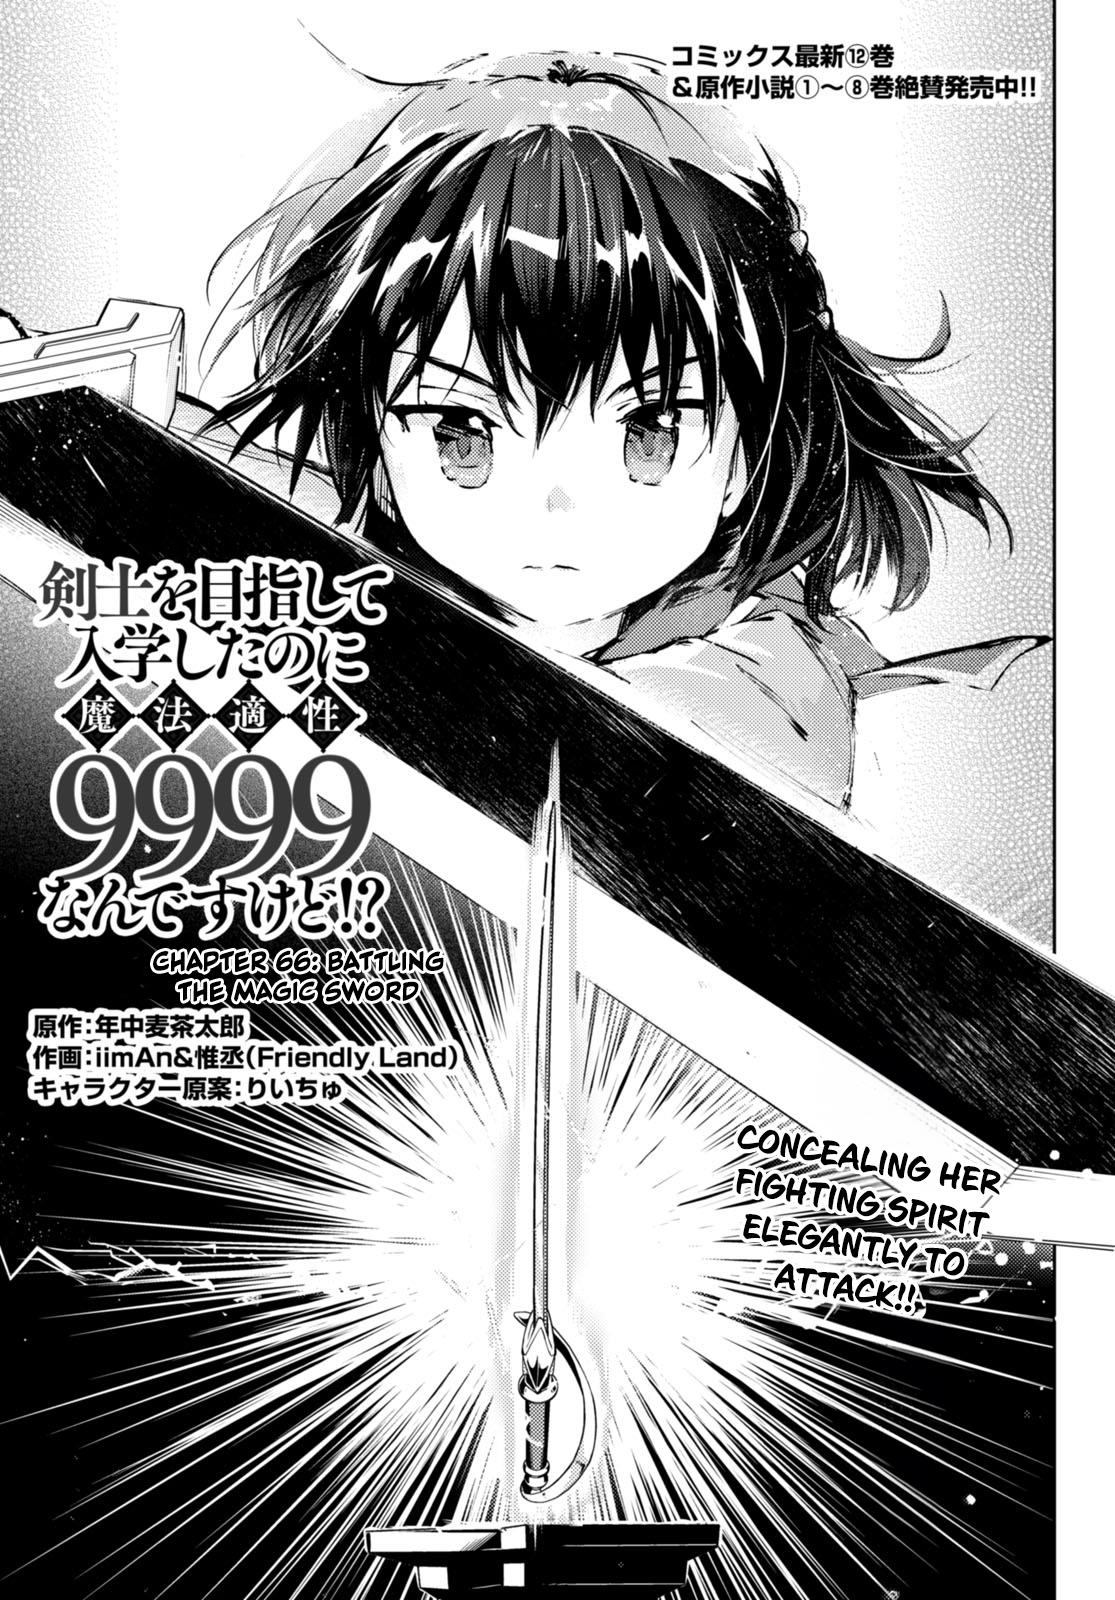 Kenshi O Mezashite Nyugaku Shitanoni Maho Tekisei 9999 Nandesukedo!? Chapter 66 #1